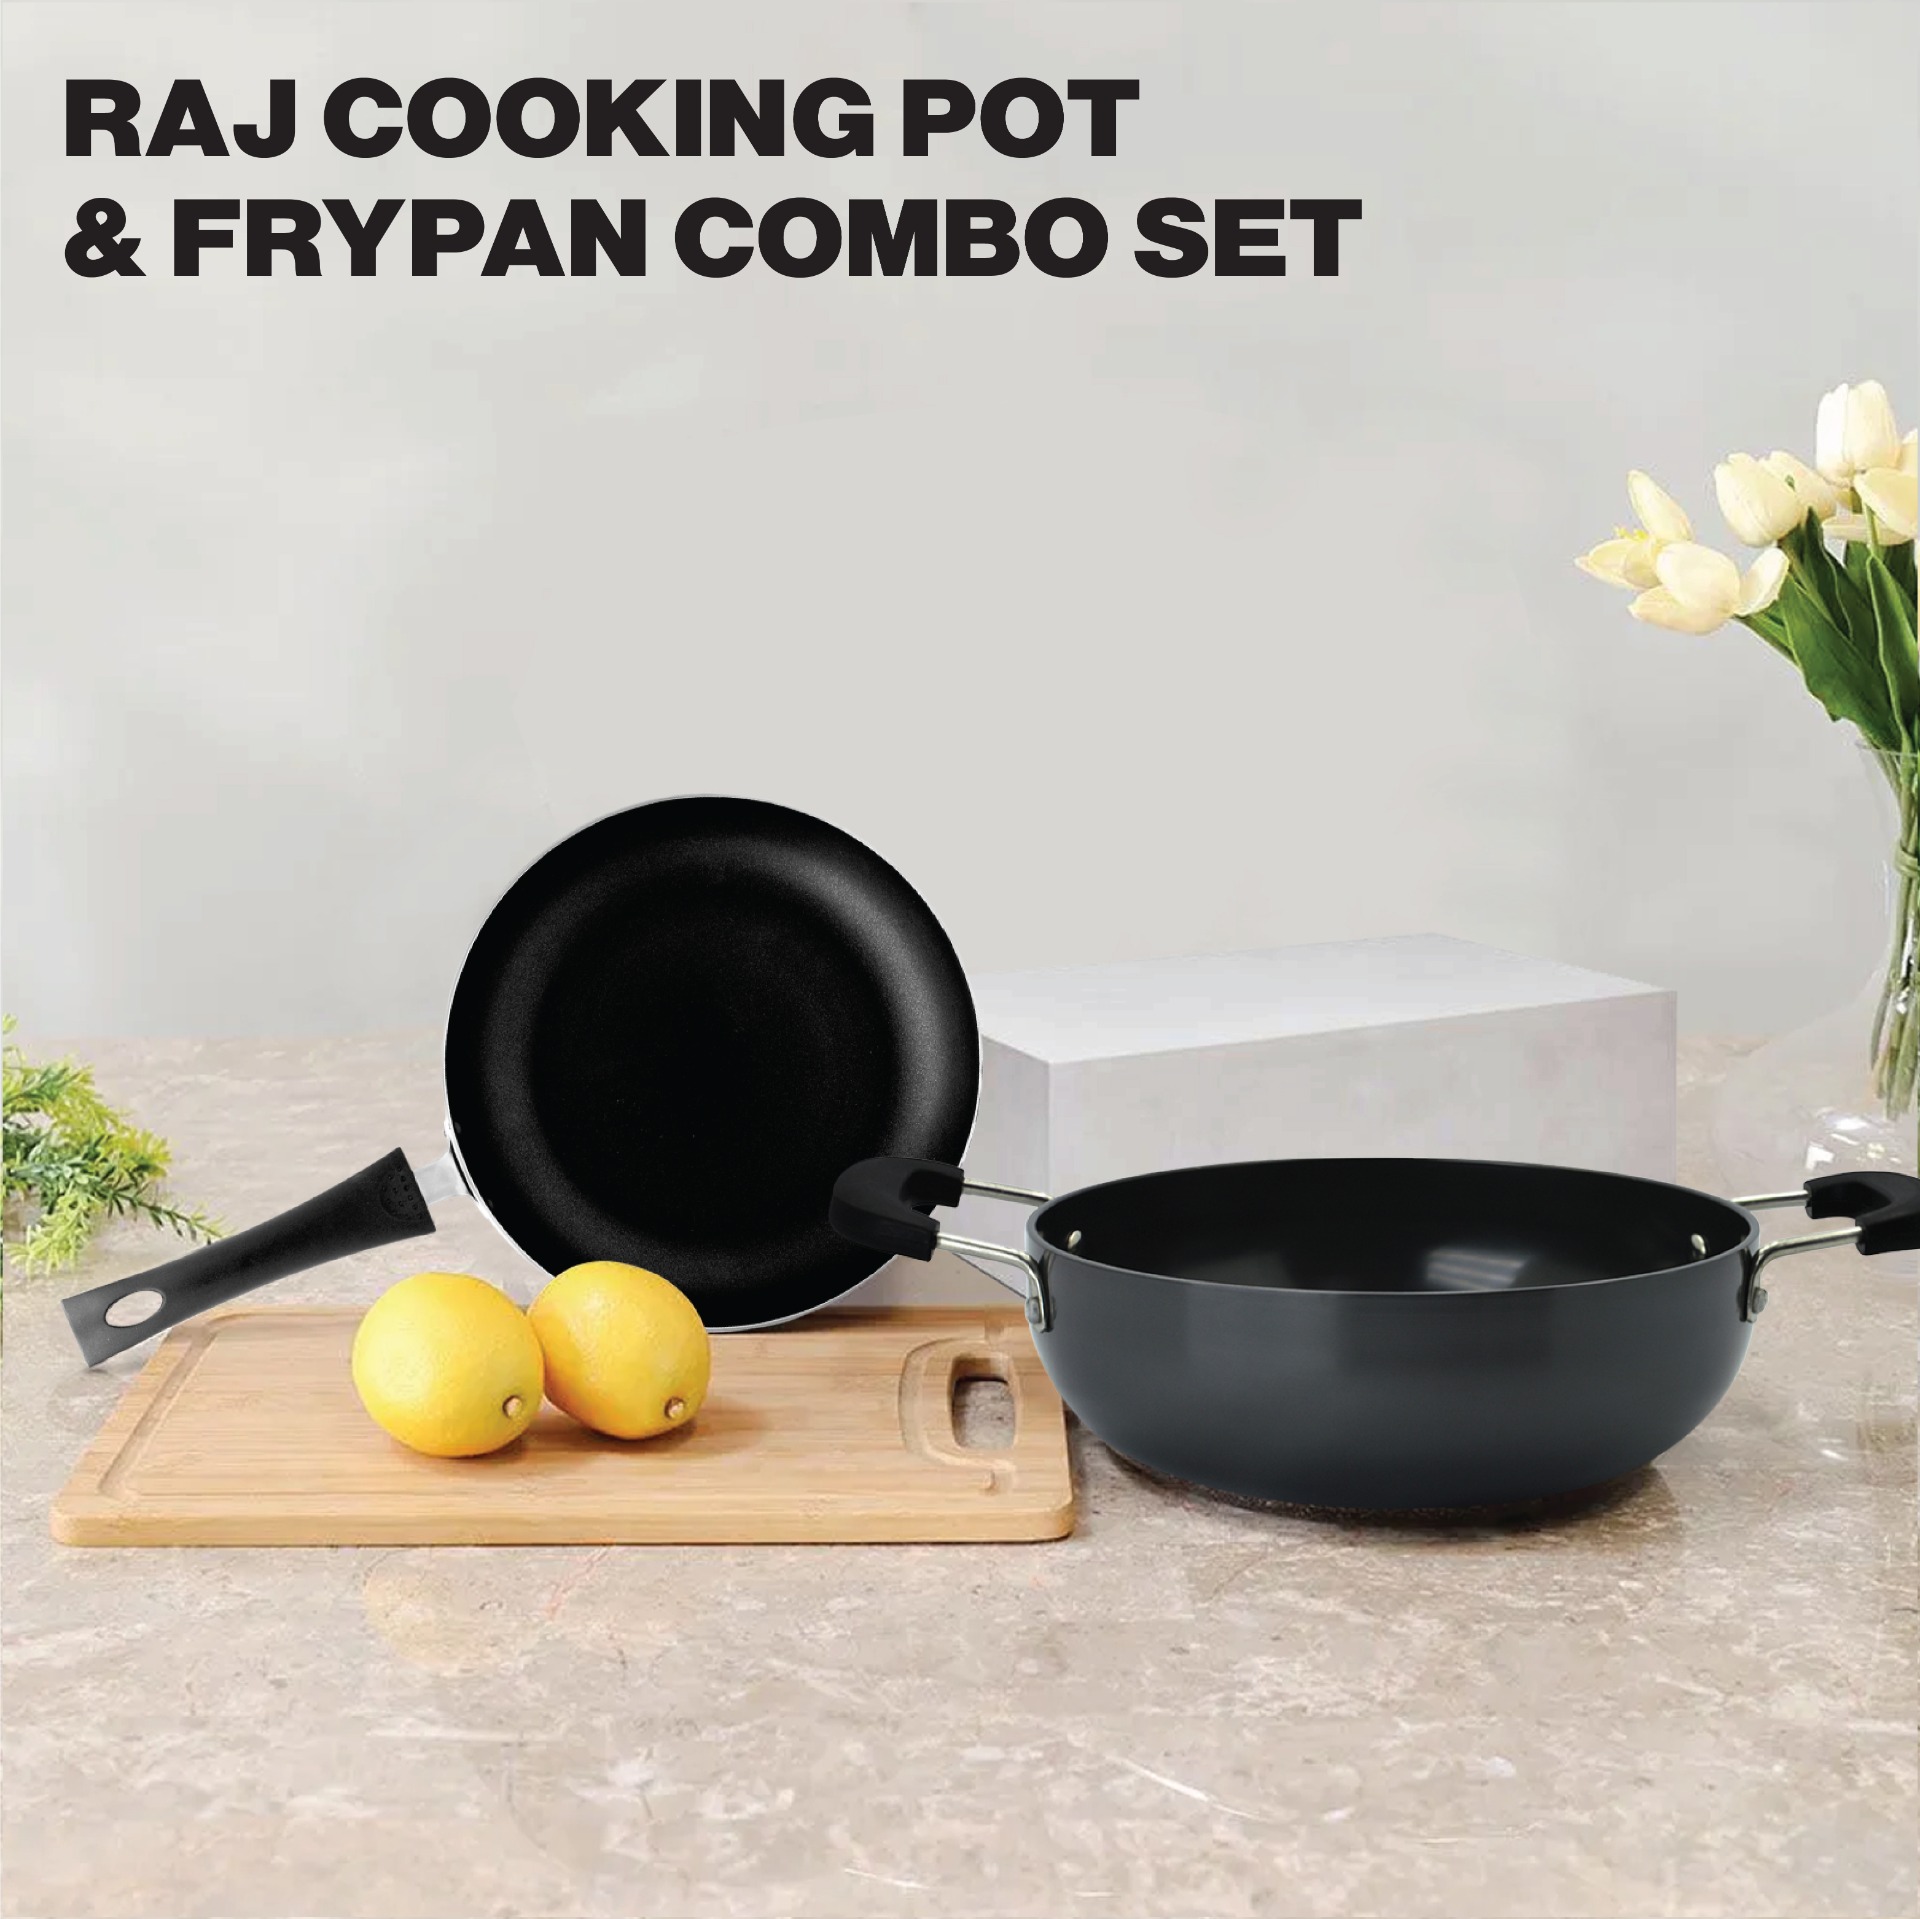 RAJ Cooking Pot and Frypan Combo Set